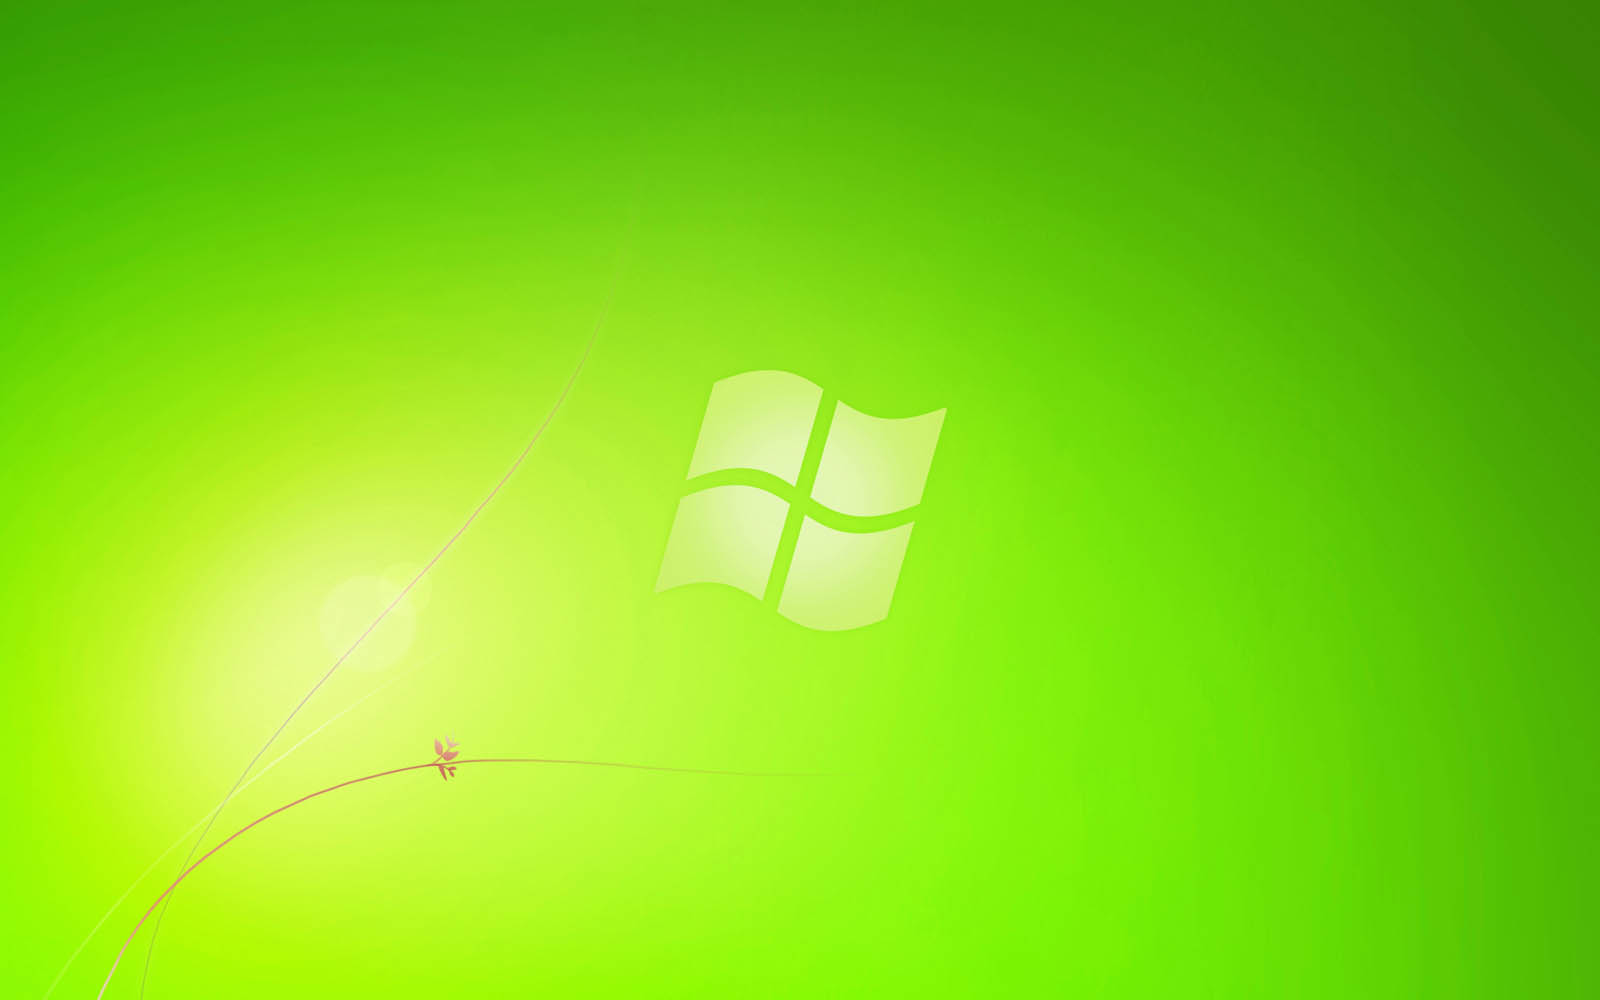 Hình nền Windows 7 màu xanh lá sẽ mang đến cho bạn không gian làm việc sáng tạo, đầy sức sống và tràn đầy năng lượng. Hãy xem qua hình ảnh liên quan để cập nhật hình nền cho máy tính của bạn.